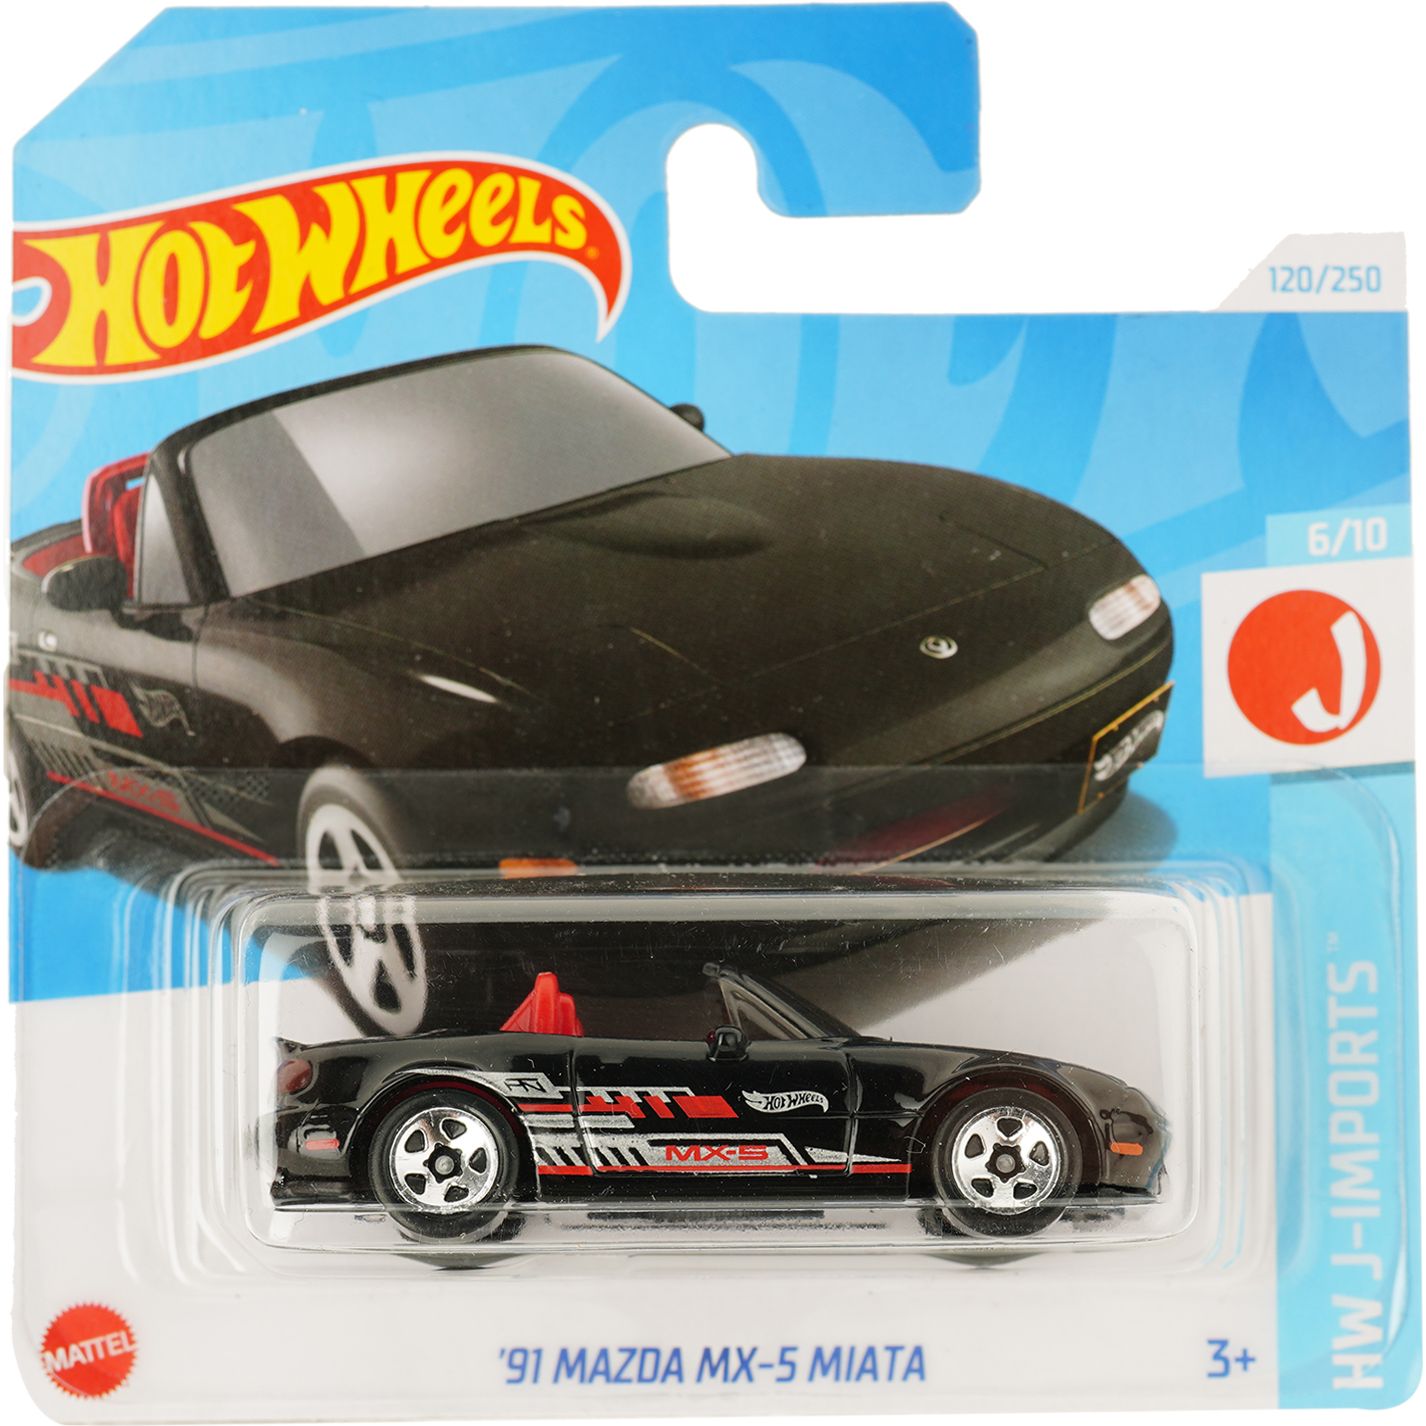 Базовая машинка Hot Wheels HW J-Imports '91 Mazda MX-5 Miata черная (5785) - фото 1